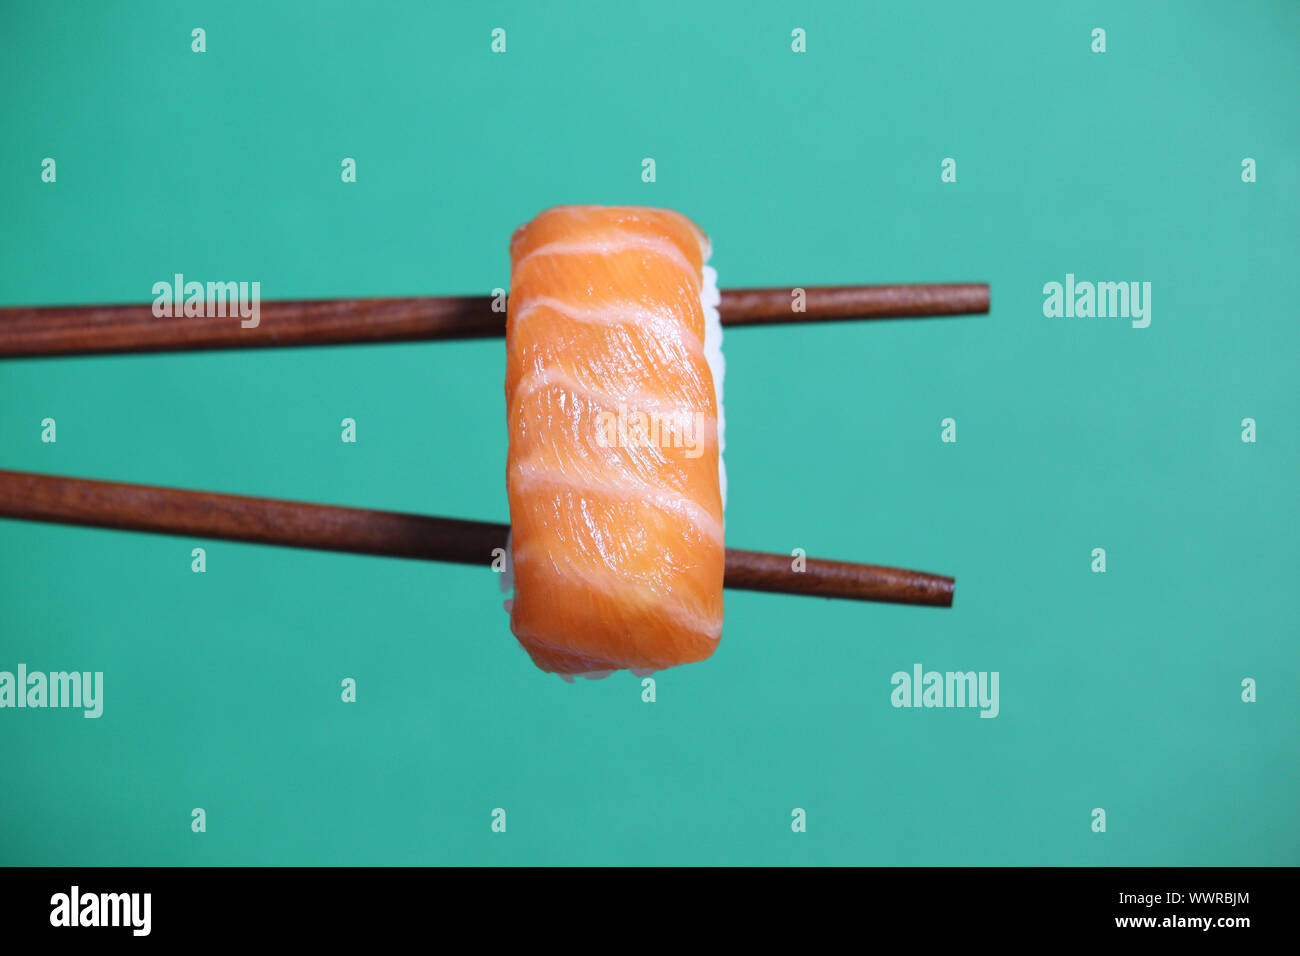 Sushi on chopsticks Stock Photo